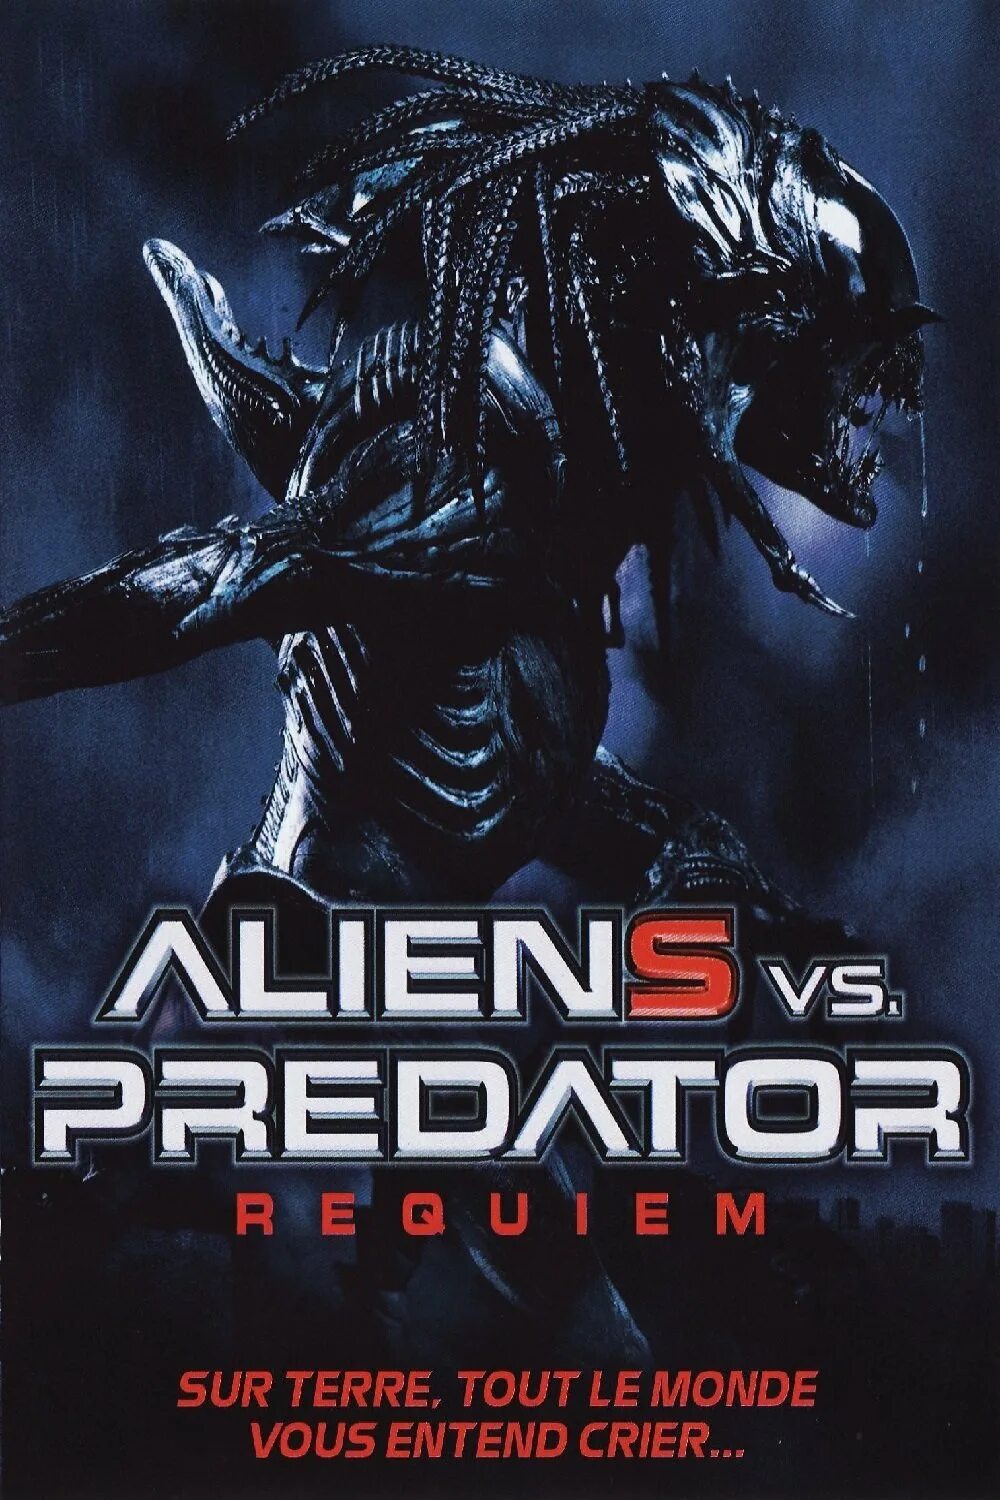 Aliens vs predator requiem. (Avp2) чужие против хищника Реквием. Чужие против хищника Реквием 2007 Постер.